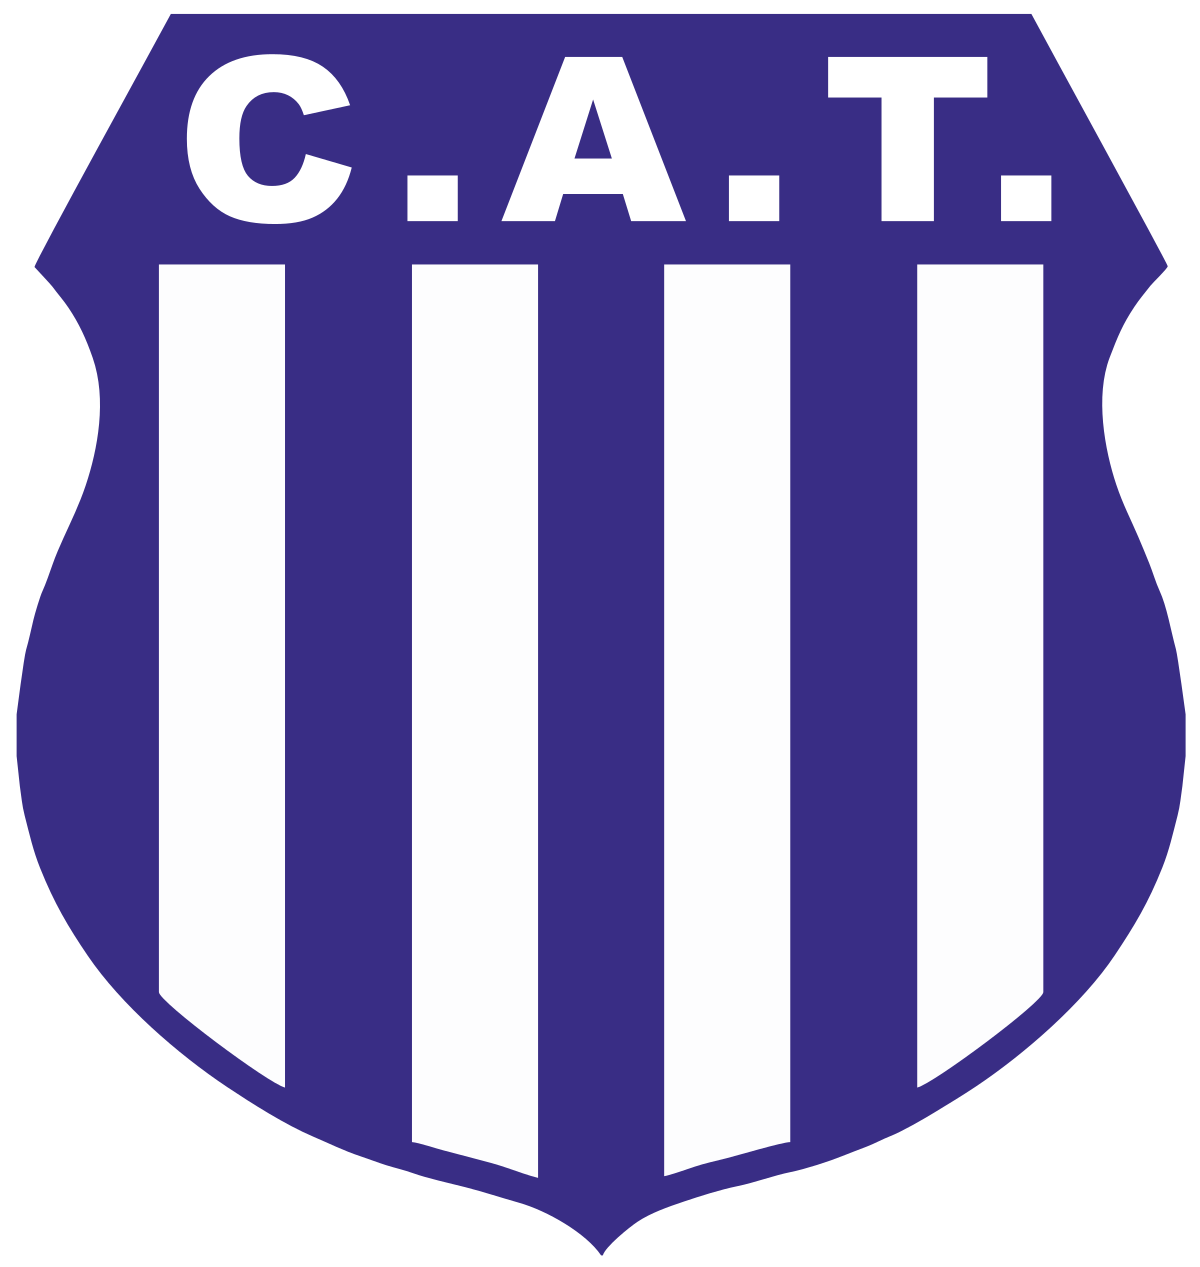 Club Atlético Talleres – Wikipédia, a enciclopédia livre